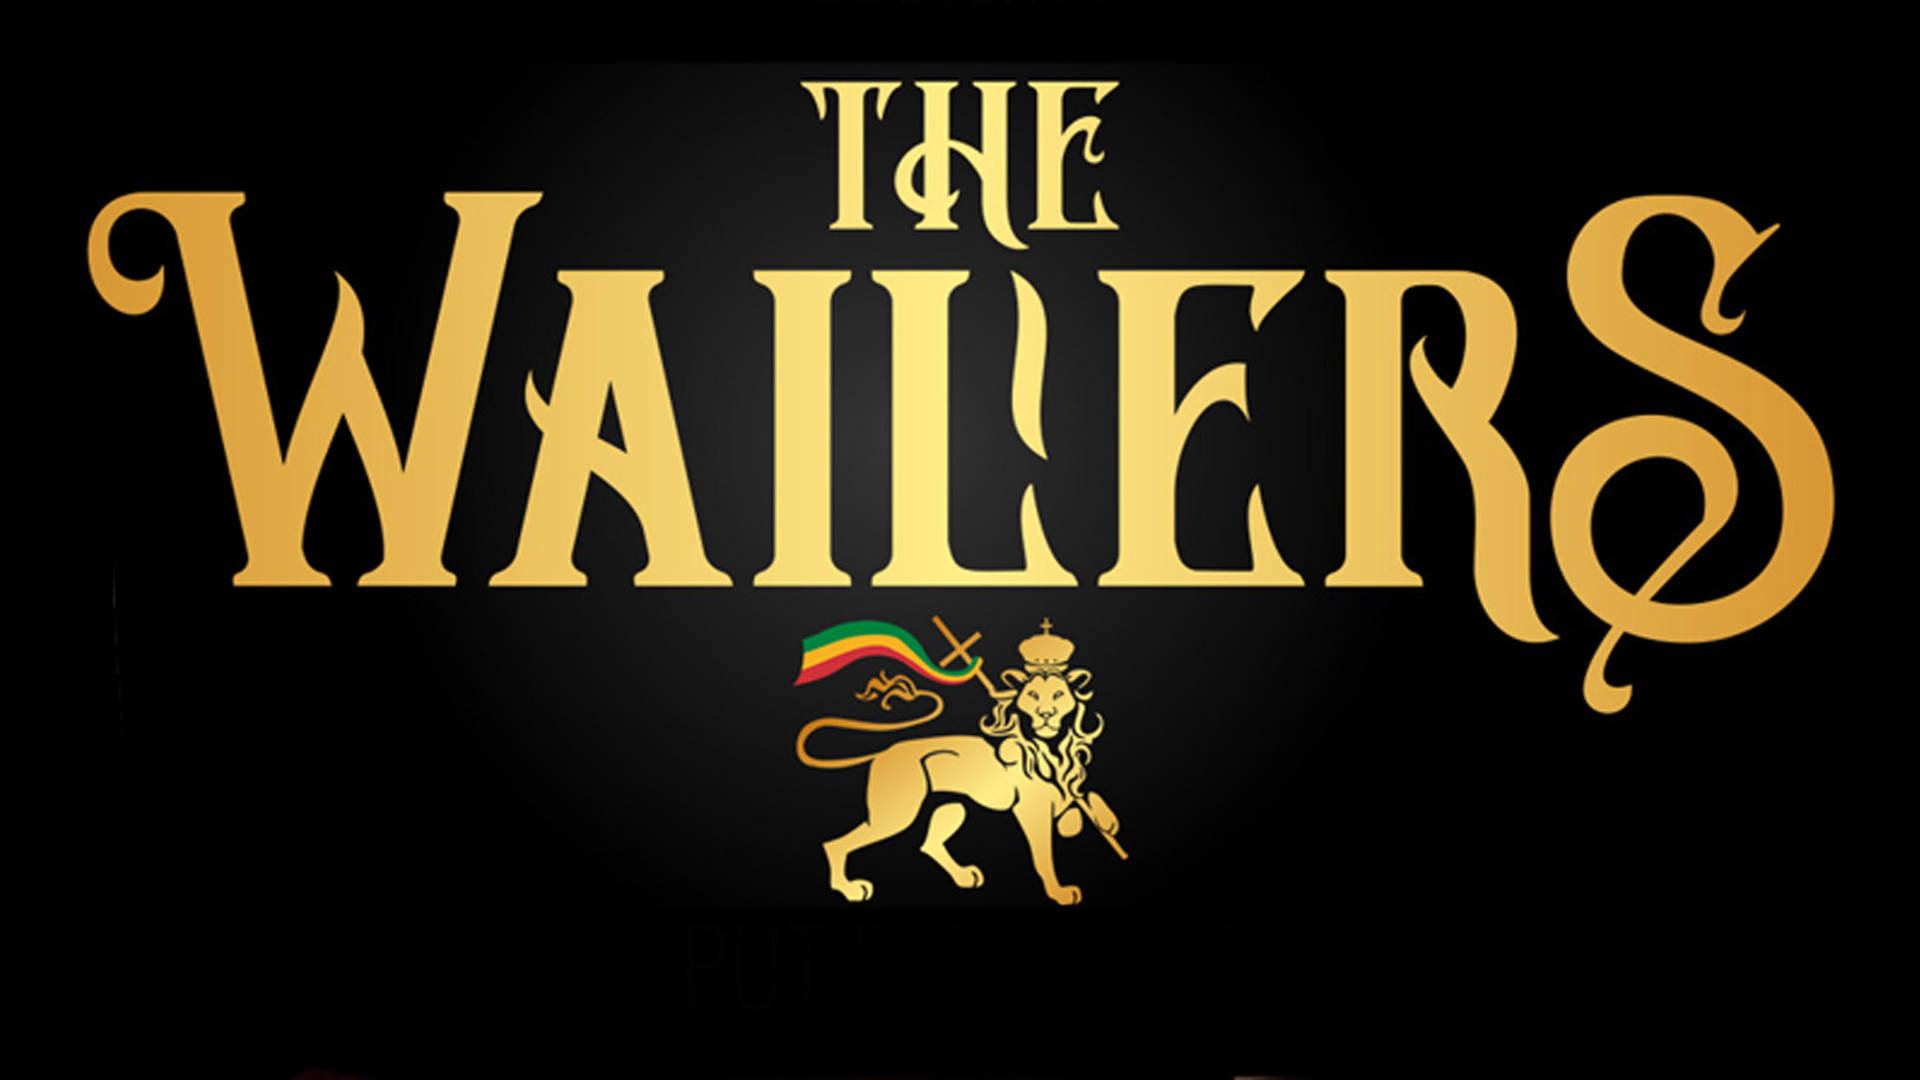 Bobmarley Und Die Wailers Band Logo Wallpaper